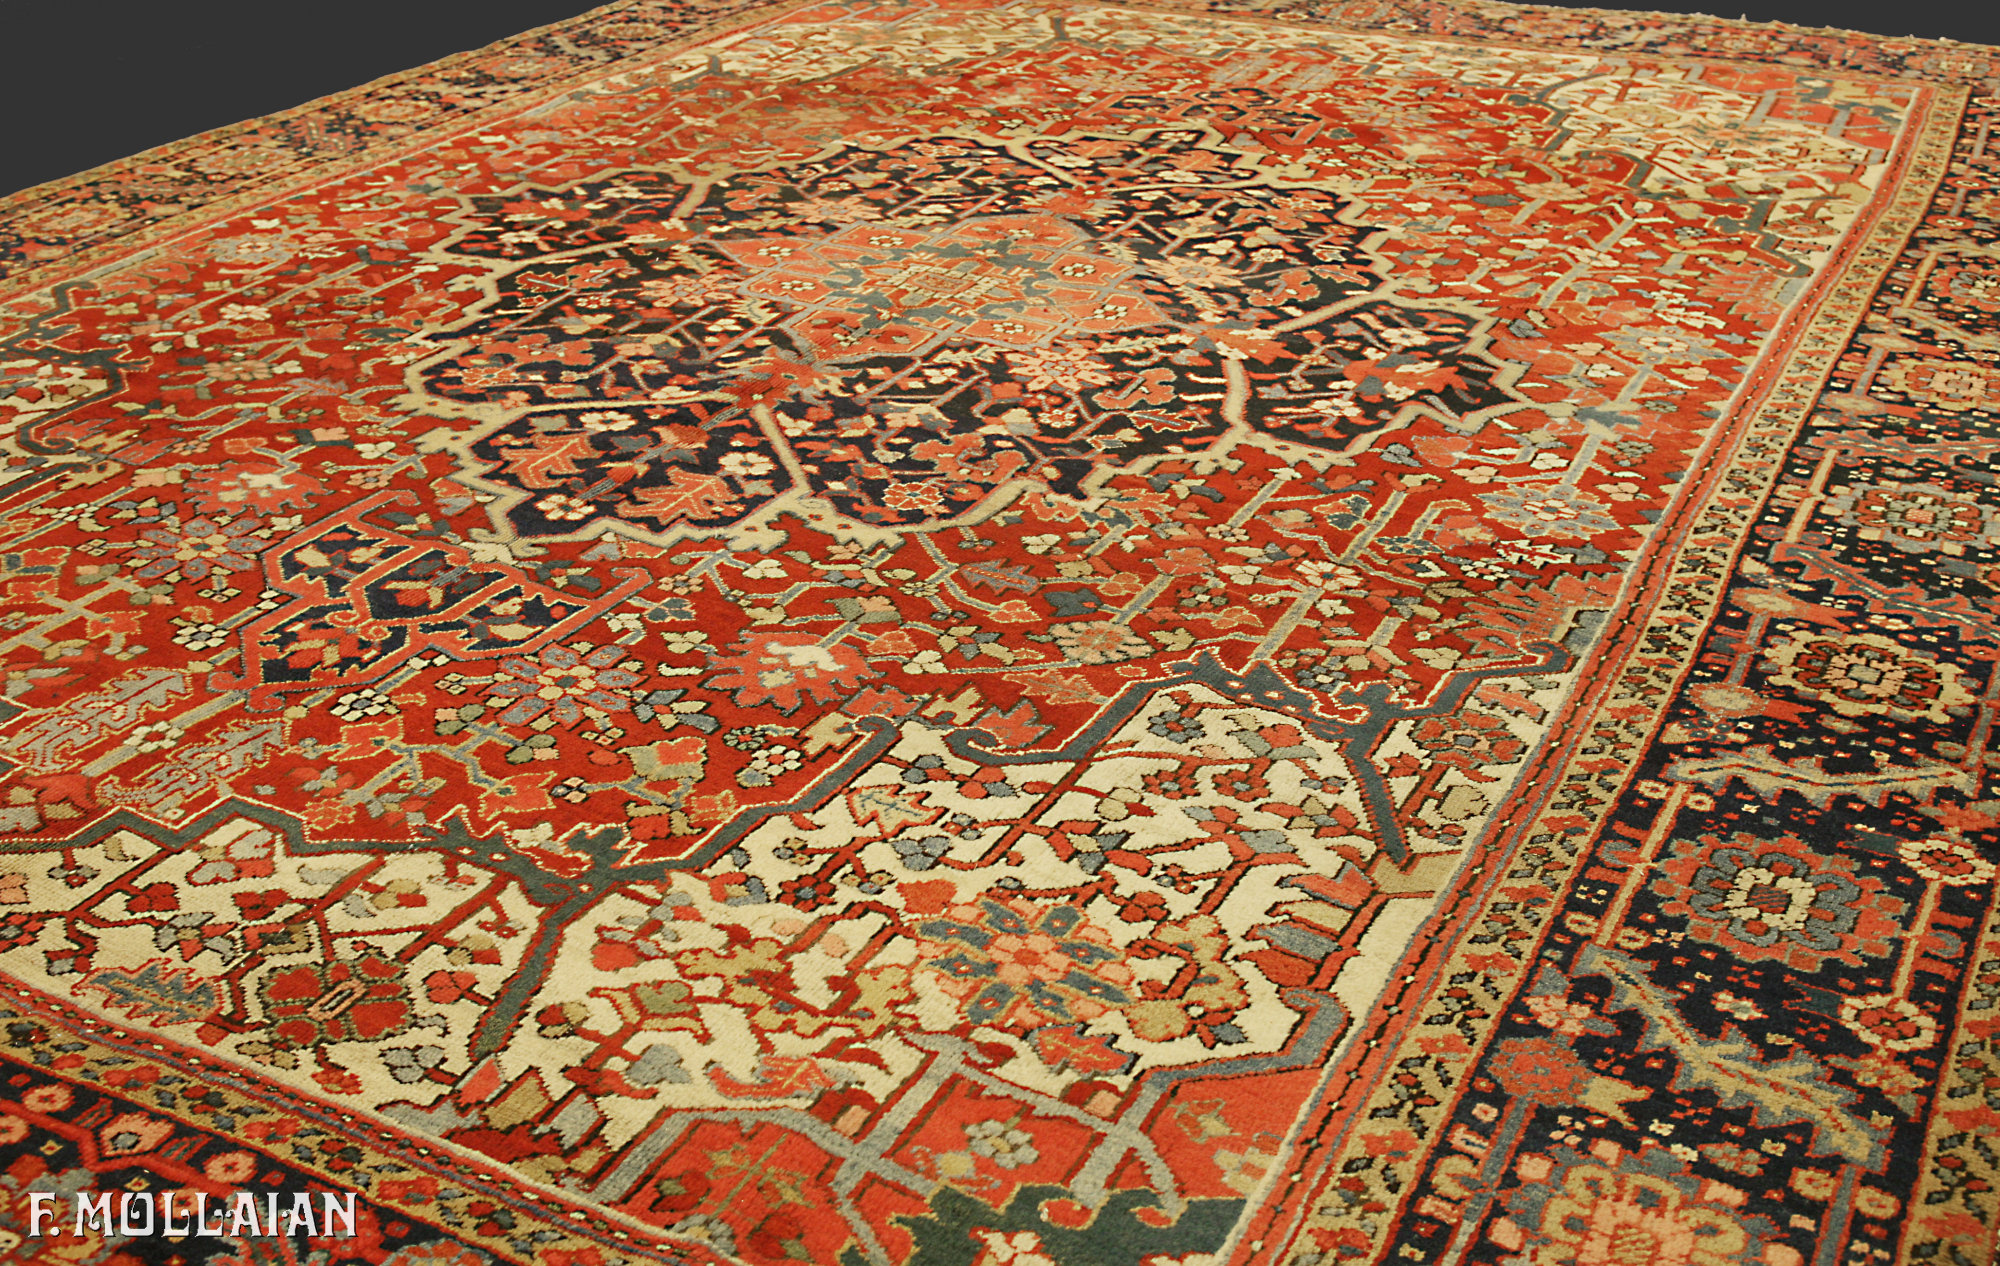 Antique Persian Heriz Carpet n°:97080710